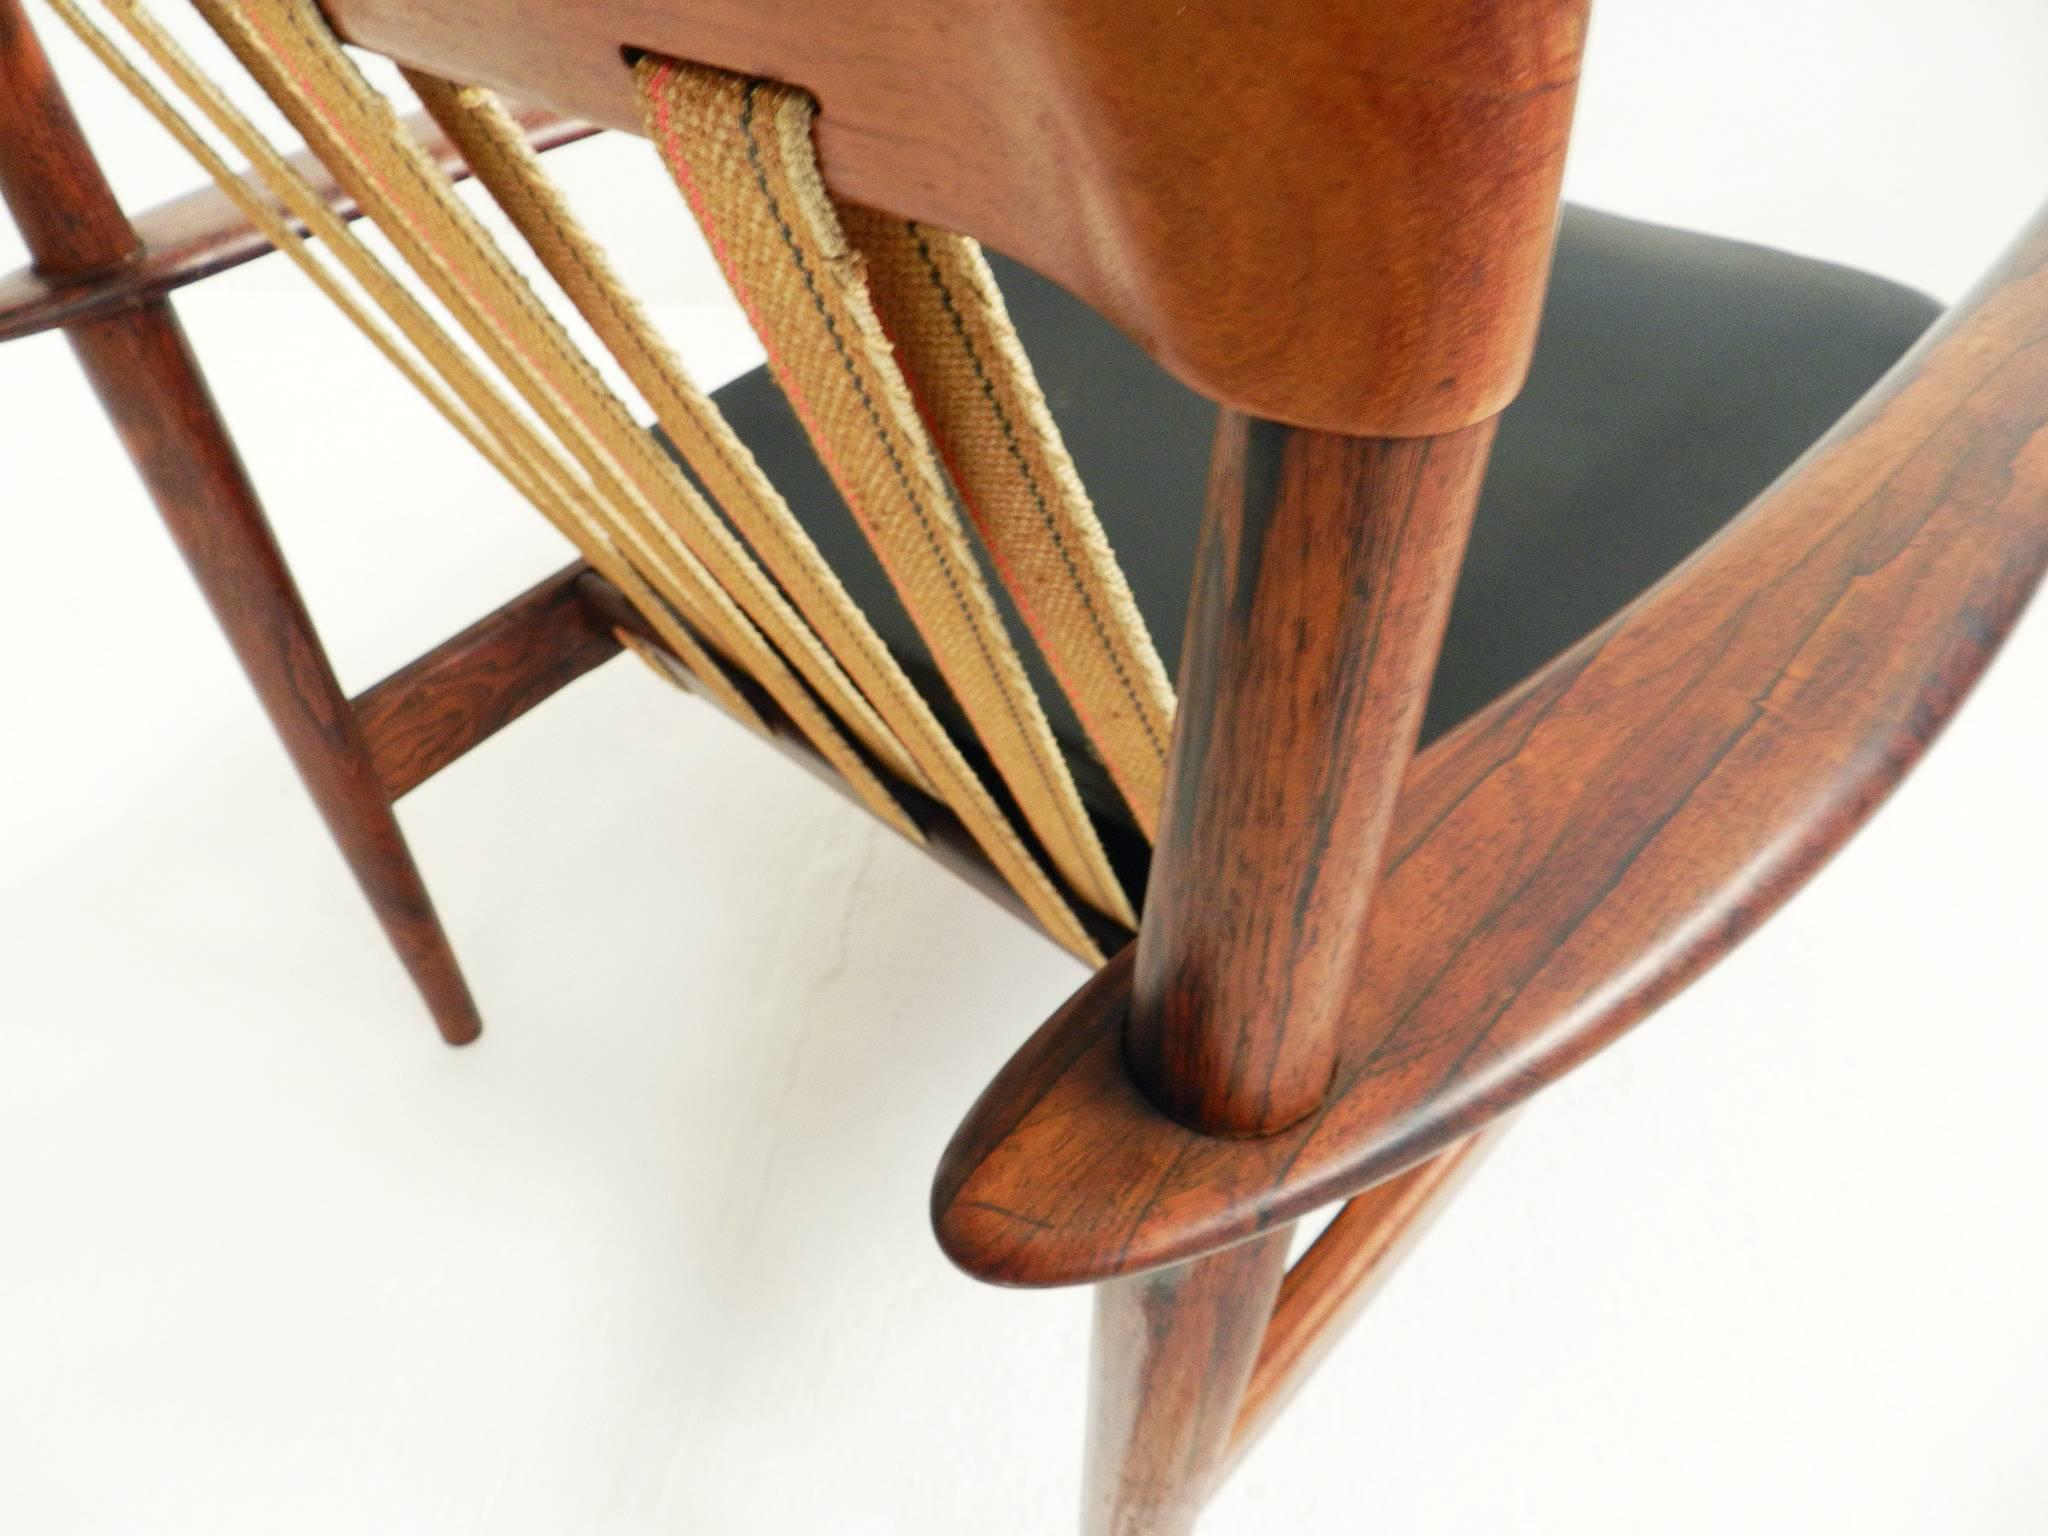 Mid-20th Century Pair of Grete Jalk Teak Easy Chairs Mod. PJ 56/1 Poul Jeppesen, Danish Modern